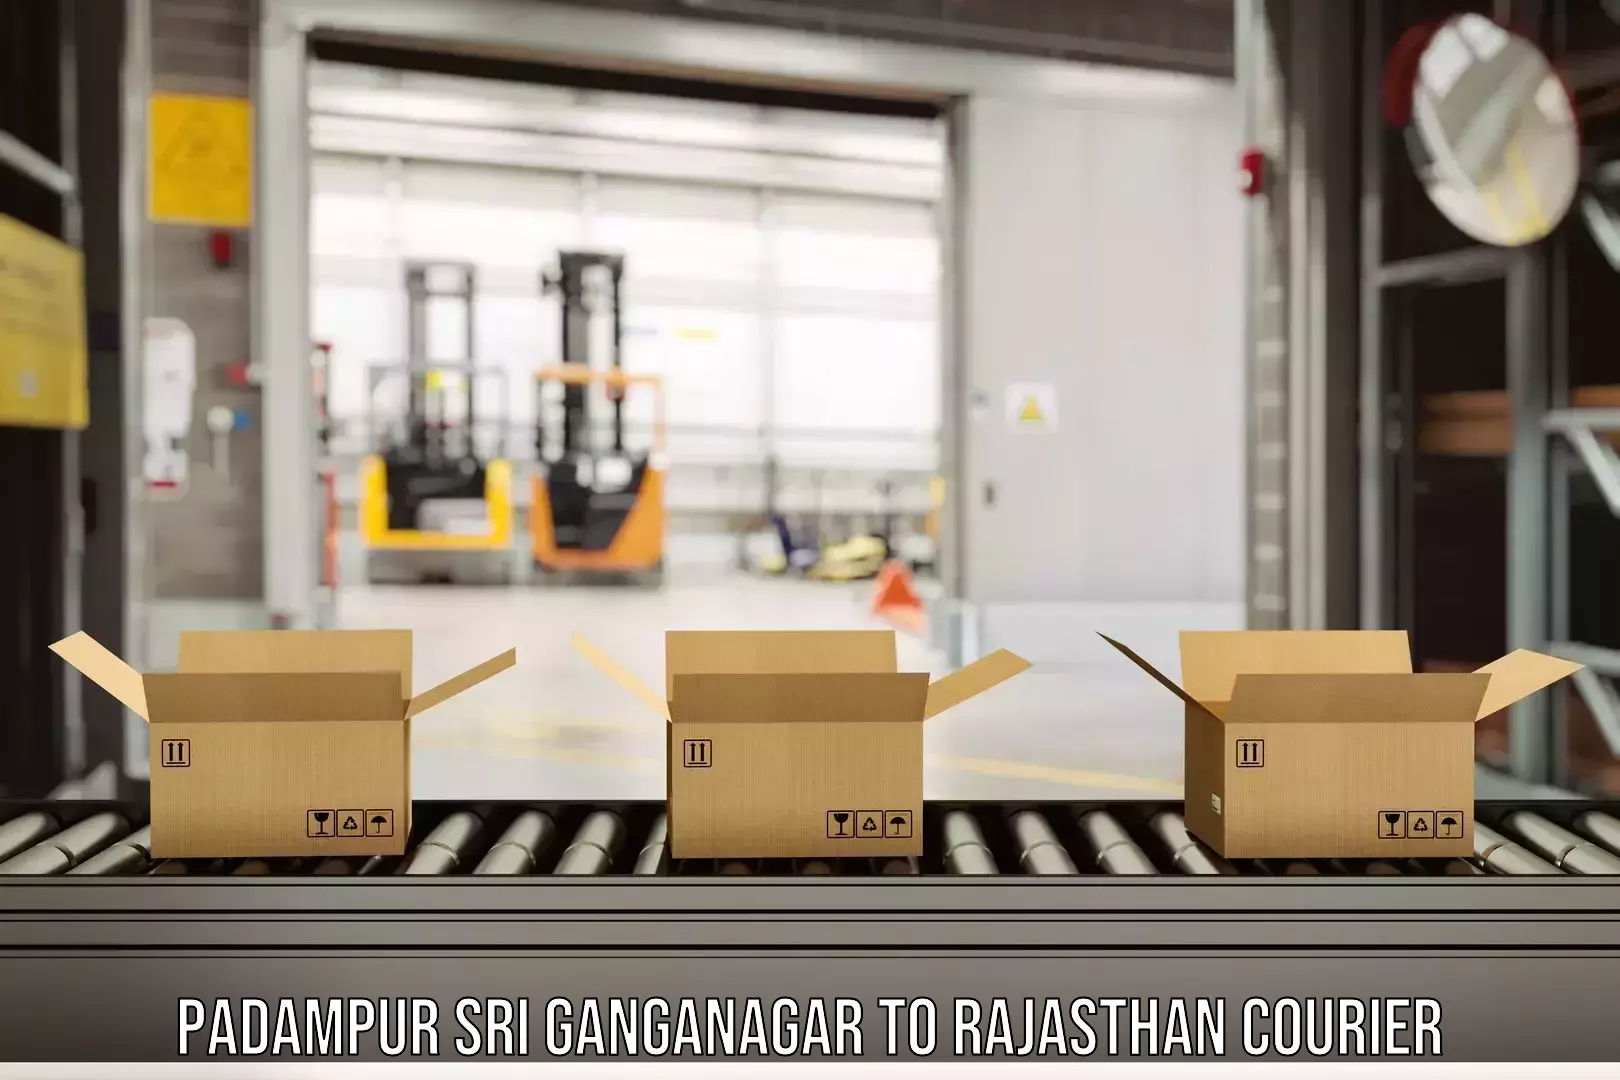 Individual parcel service Padampur Sri Ganganagar to Keshoraipatan